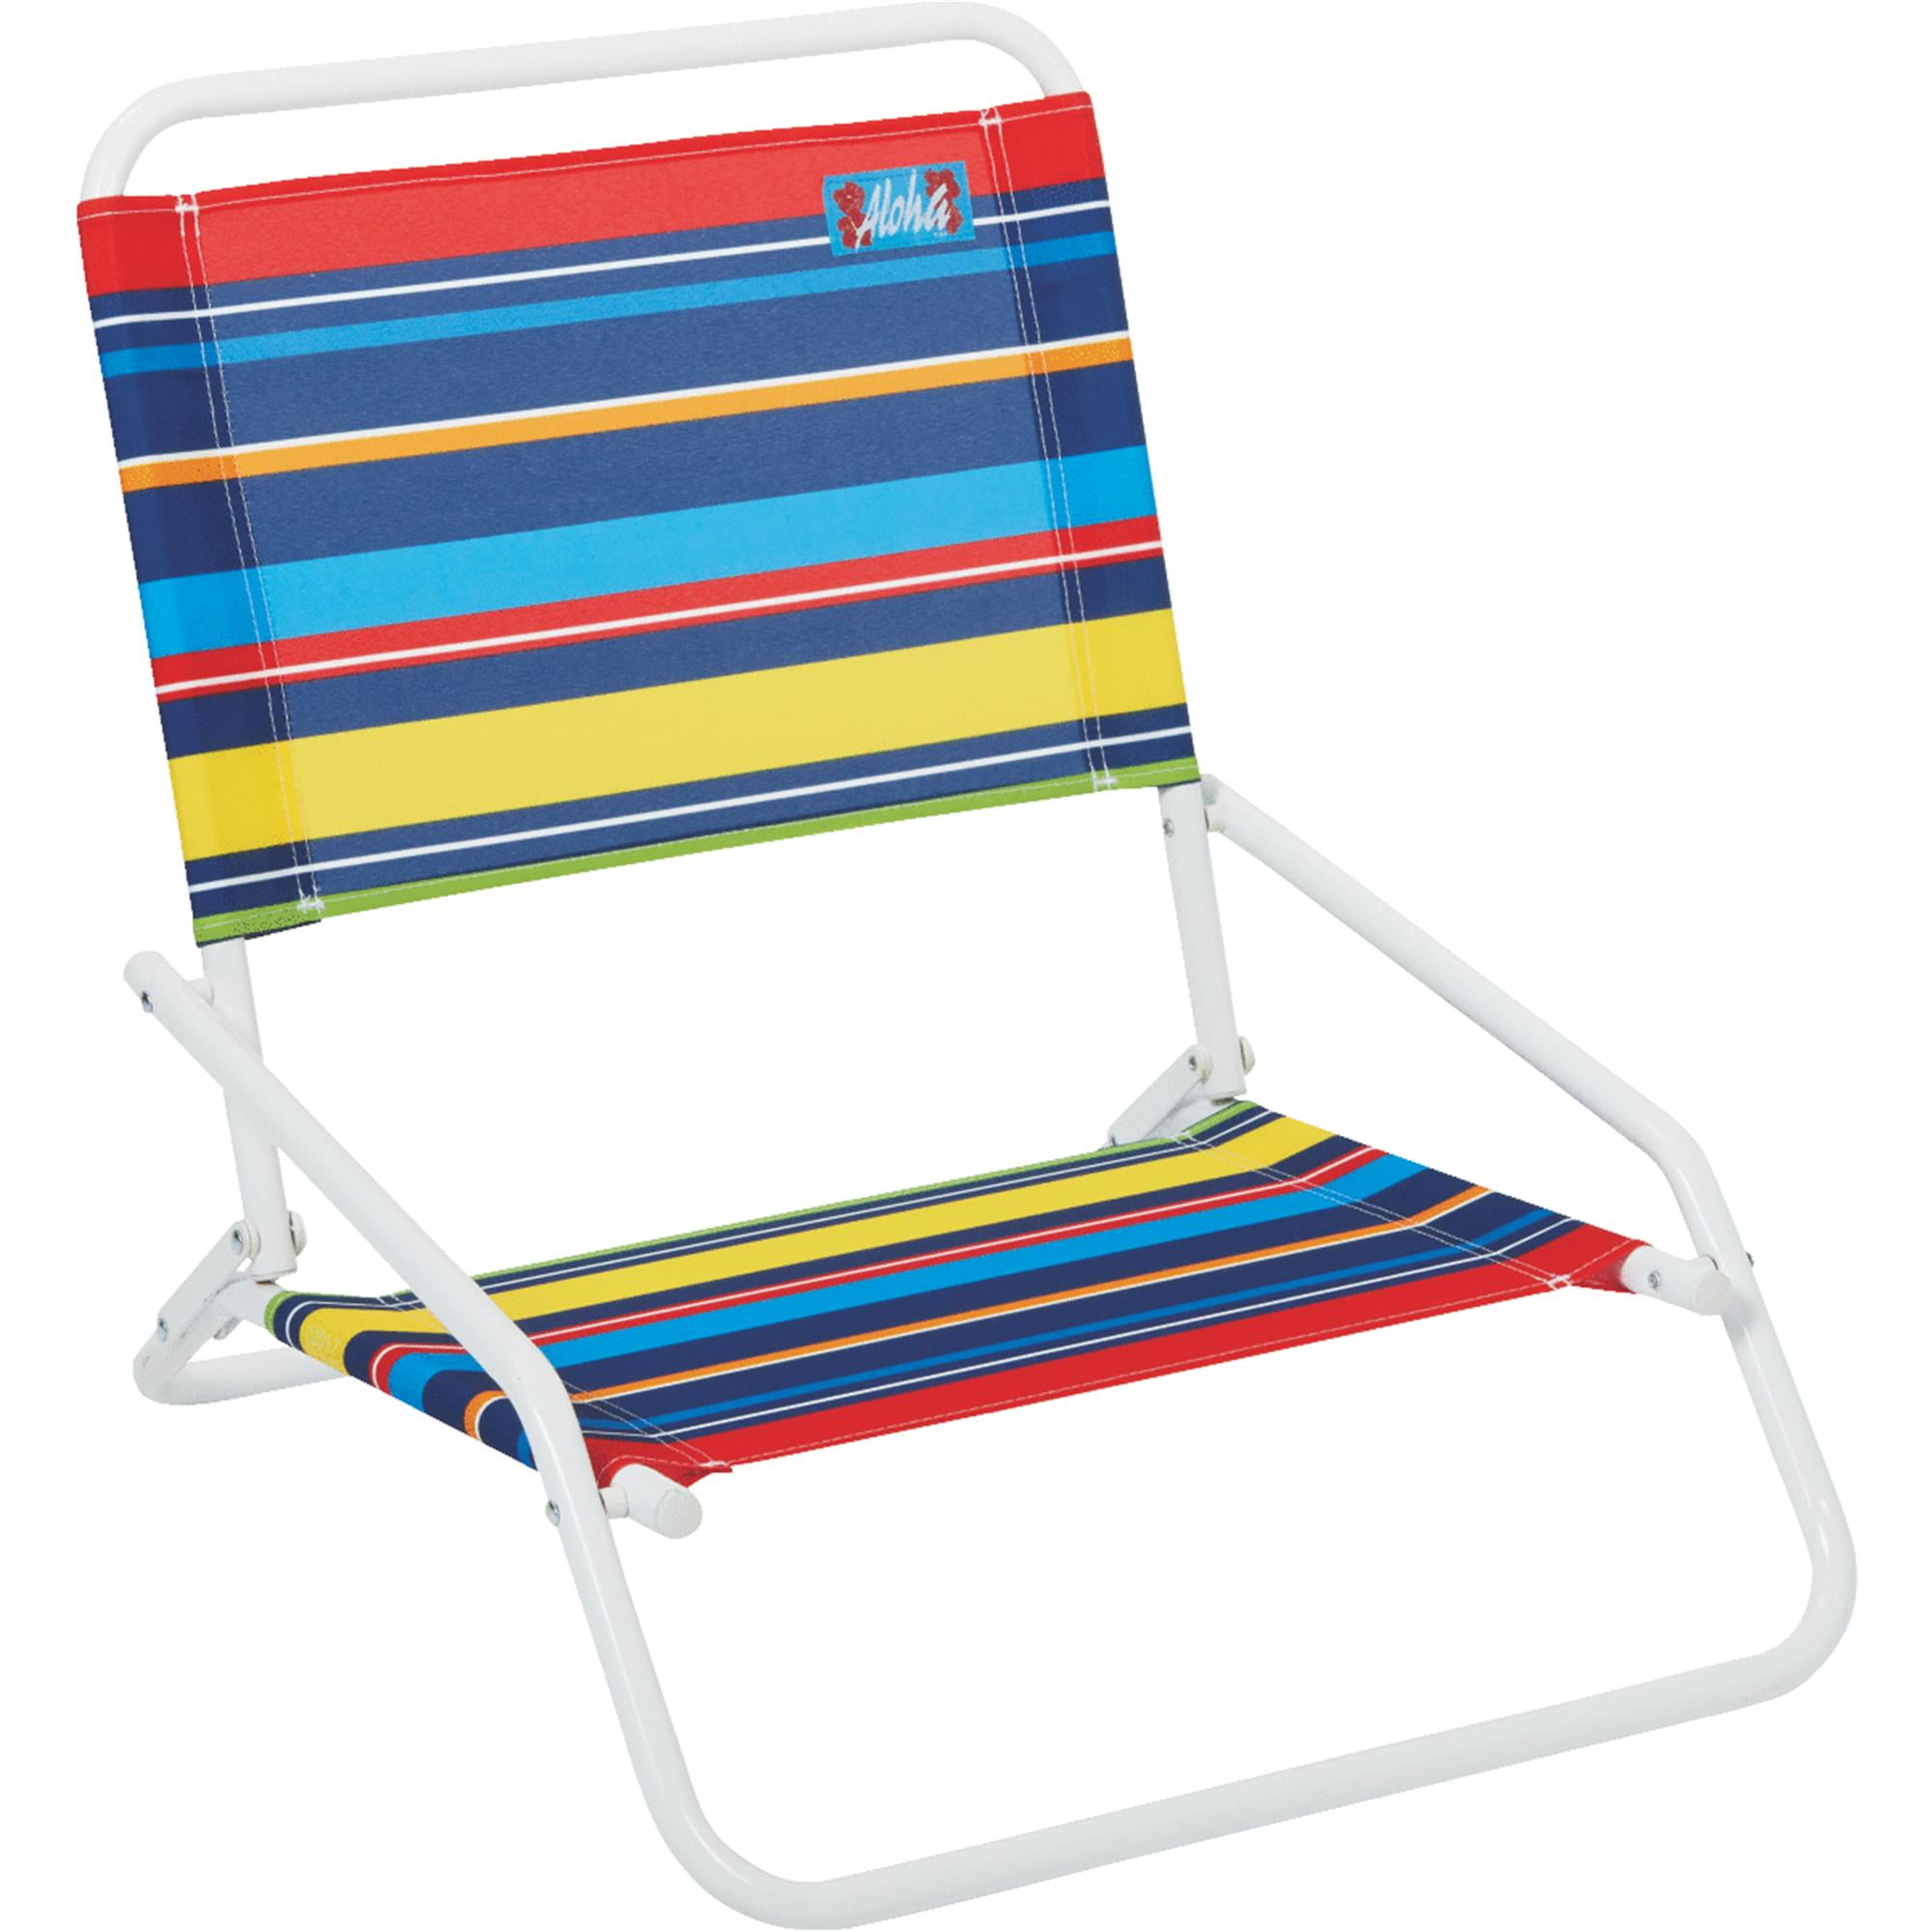 New Rio Brands Beach Chair 